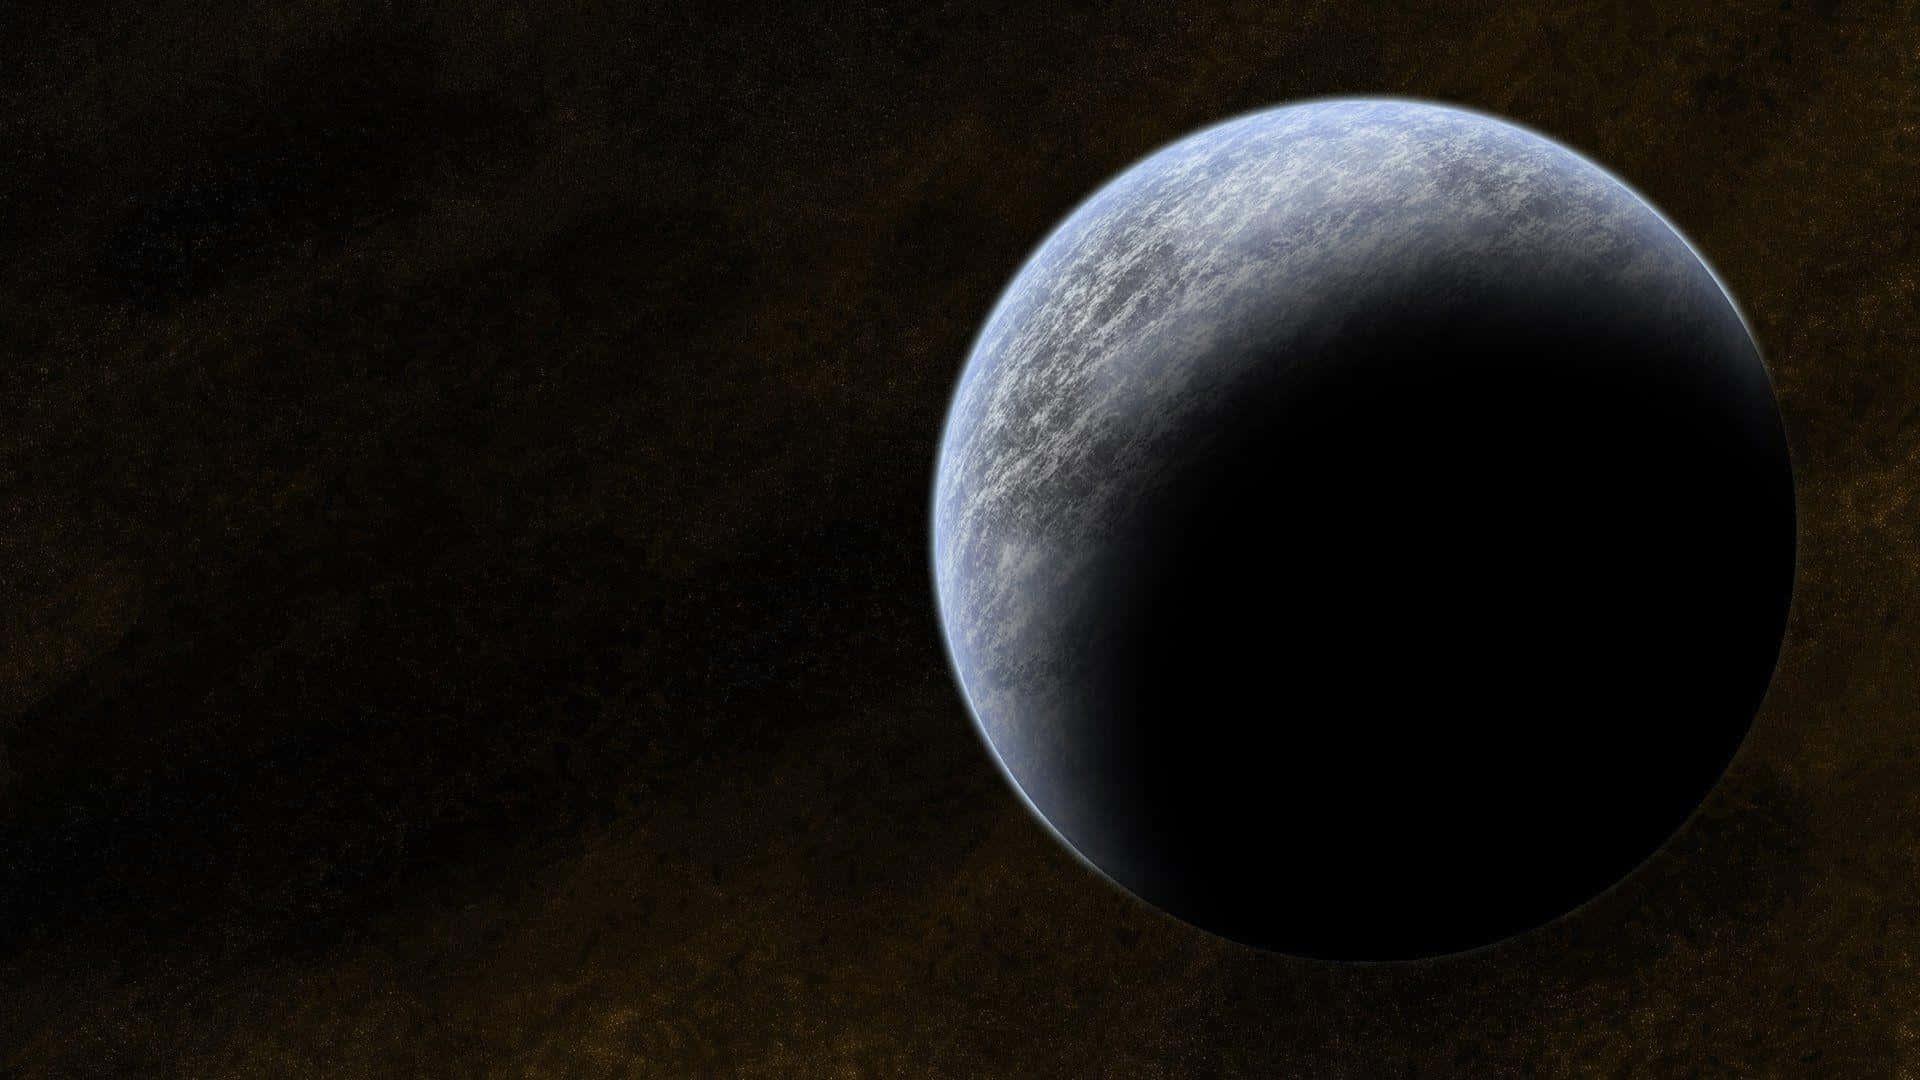 Planetenneptunus, Den Mest Avlägsna Planeten I Vårt Solsystem